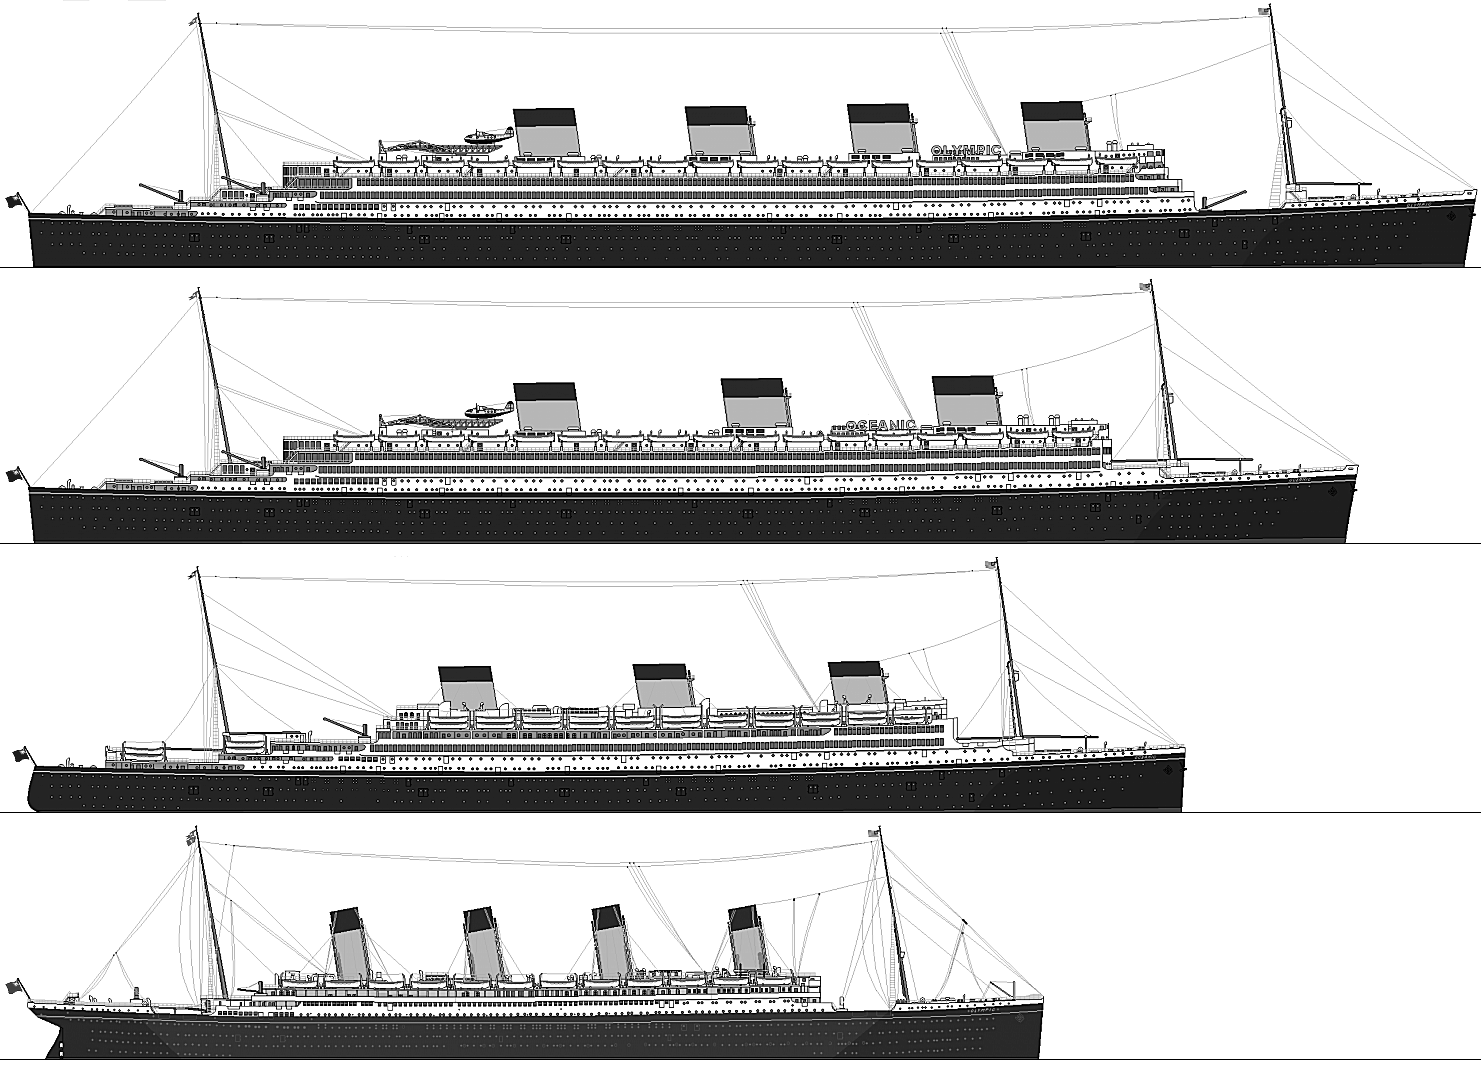 Размер парохода. Корабли Титаник Британик и Олимпик. Британик Титаник Олимпик модели. Олимпик Титаник Британик Лузитания Гигантик. Титаник Британик и Олимпик чертежи.